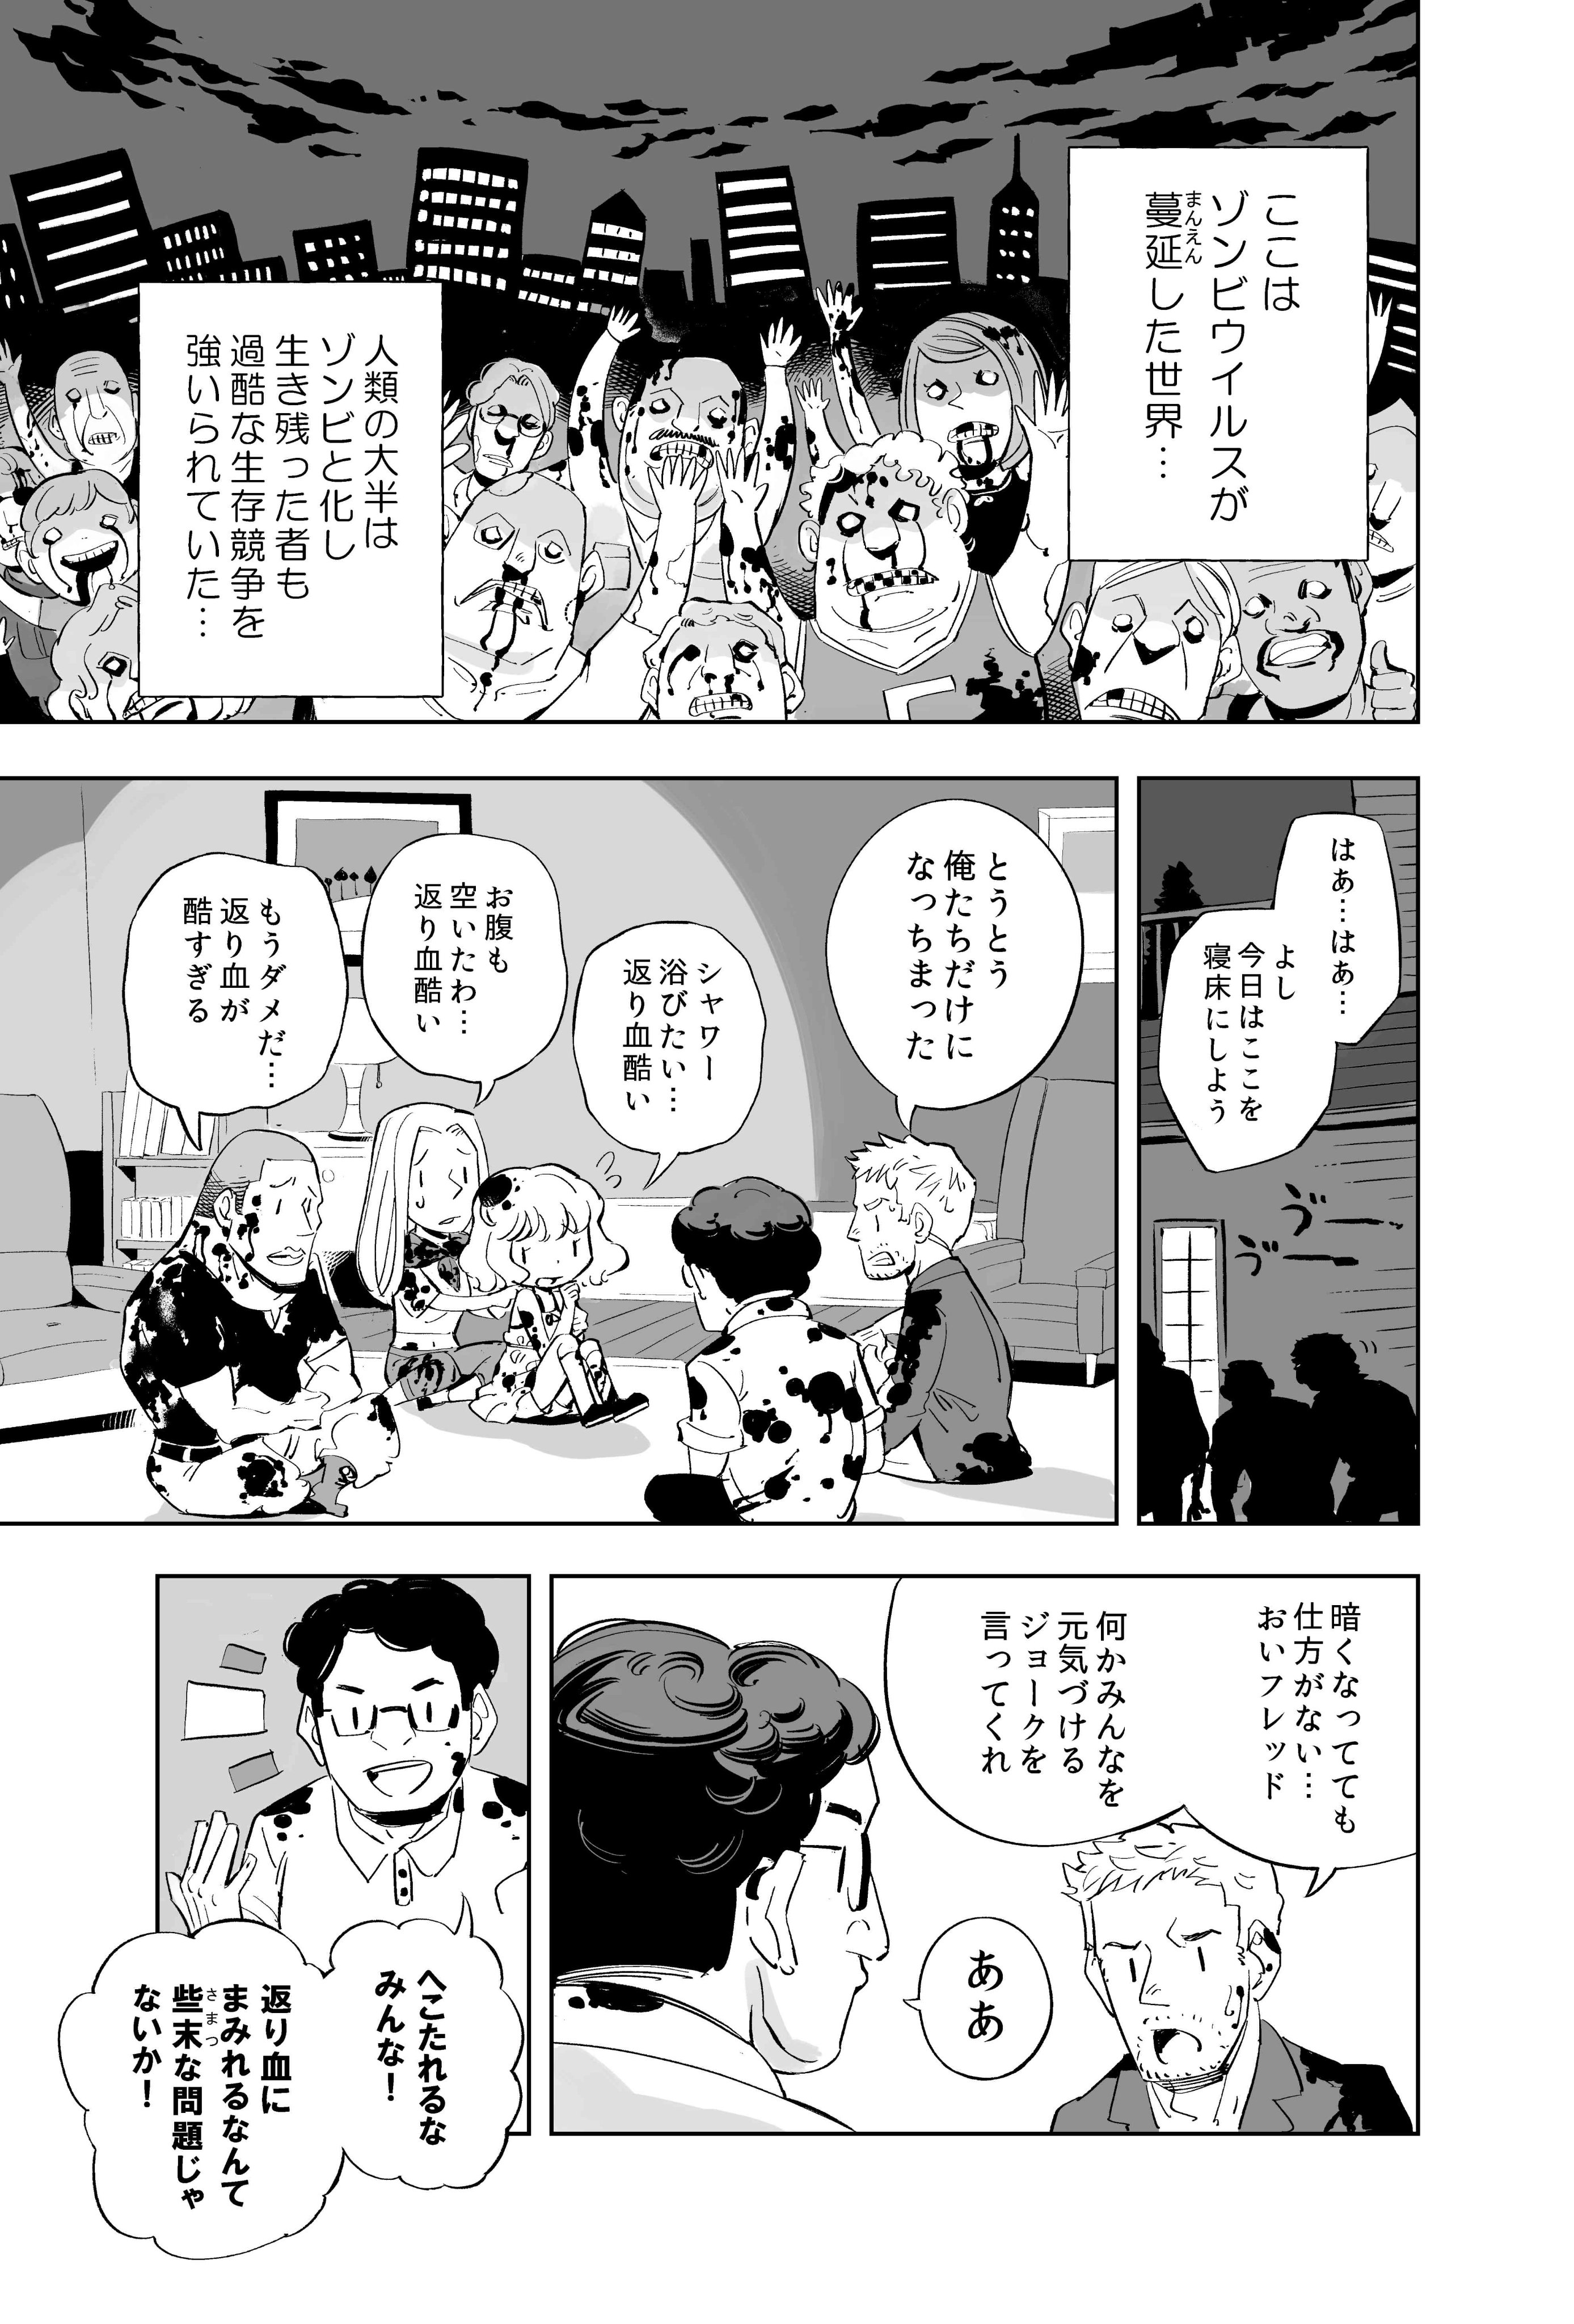 【漫画】ゾンビコメディ『カミングアウト』